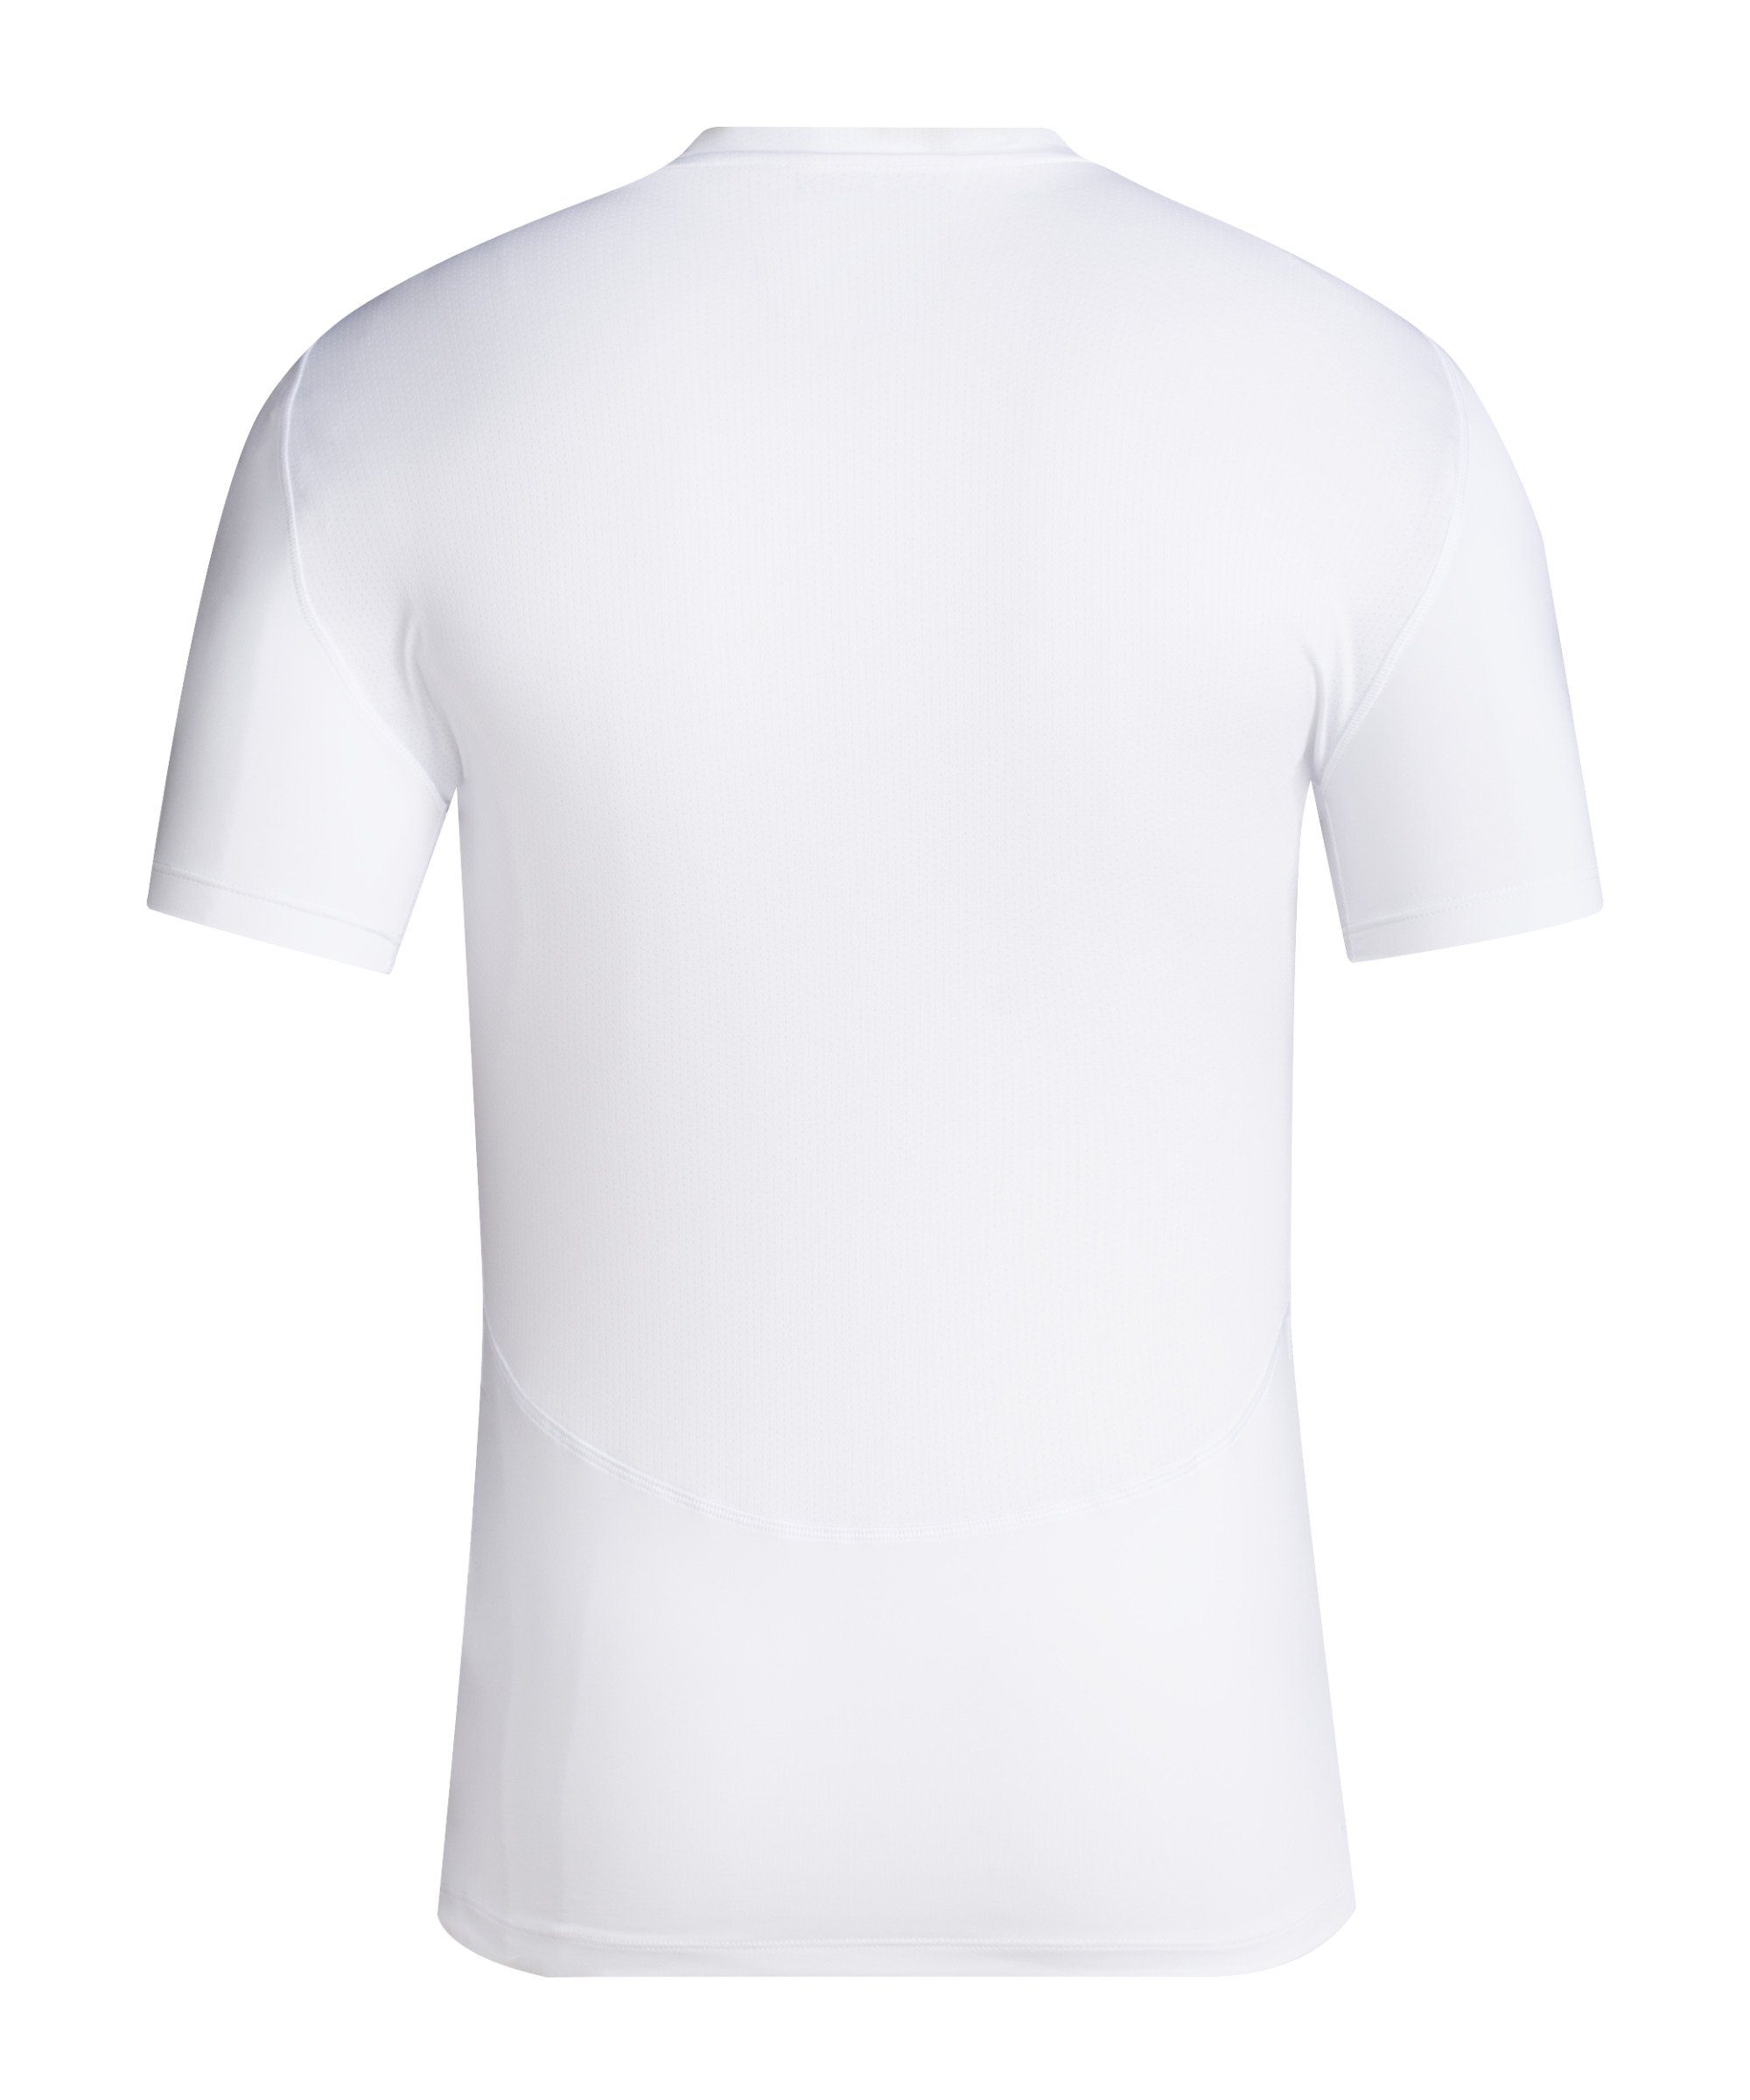 weiss Funktionsshirt default adidas Tech-Fit Performance T-Shirt